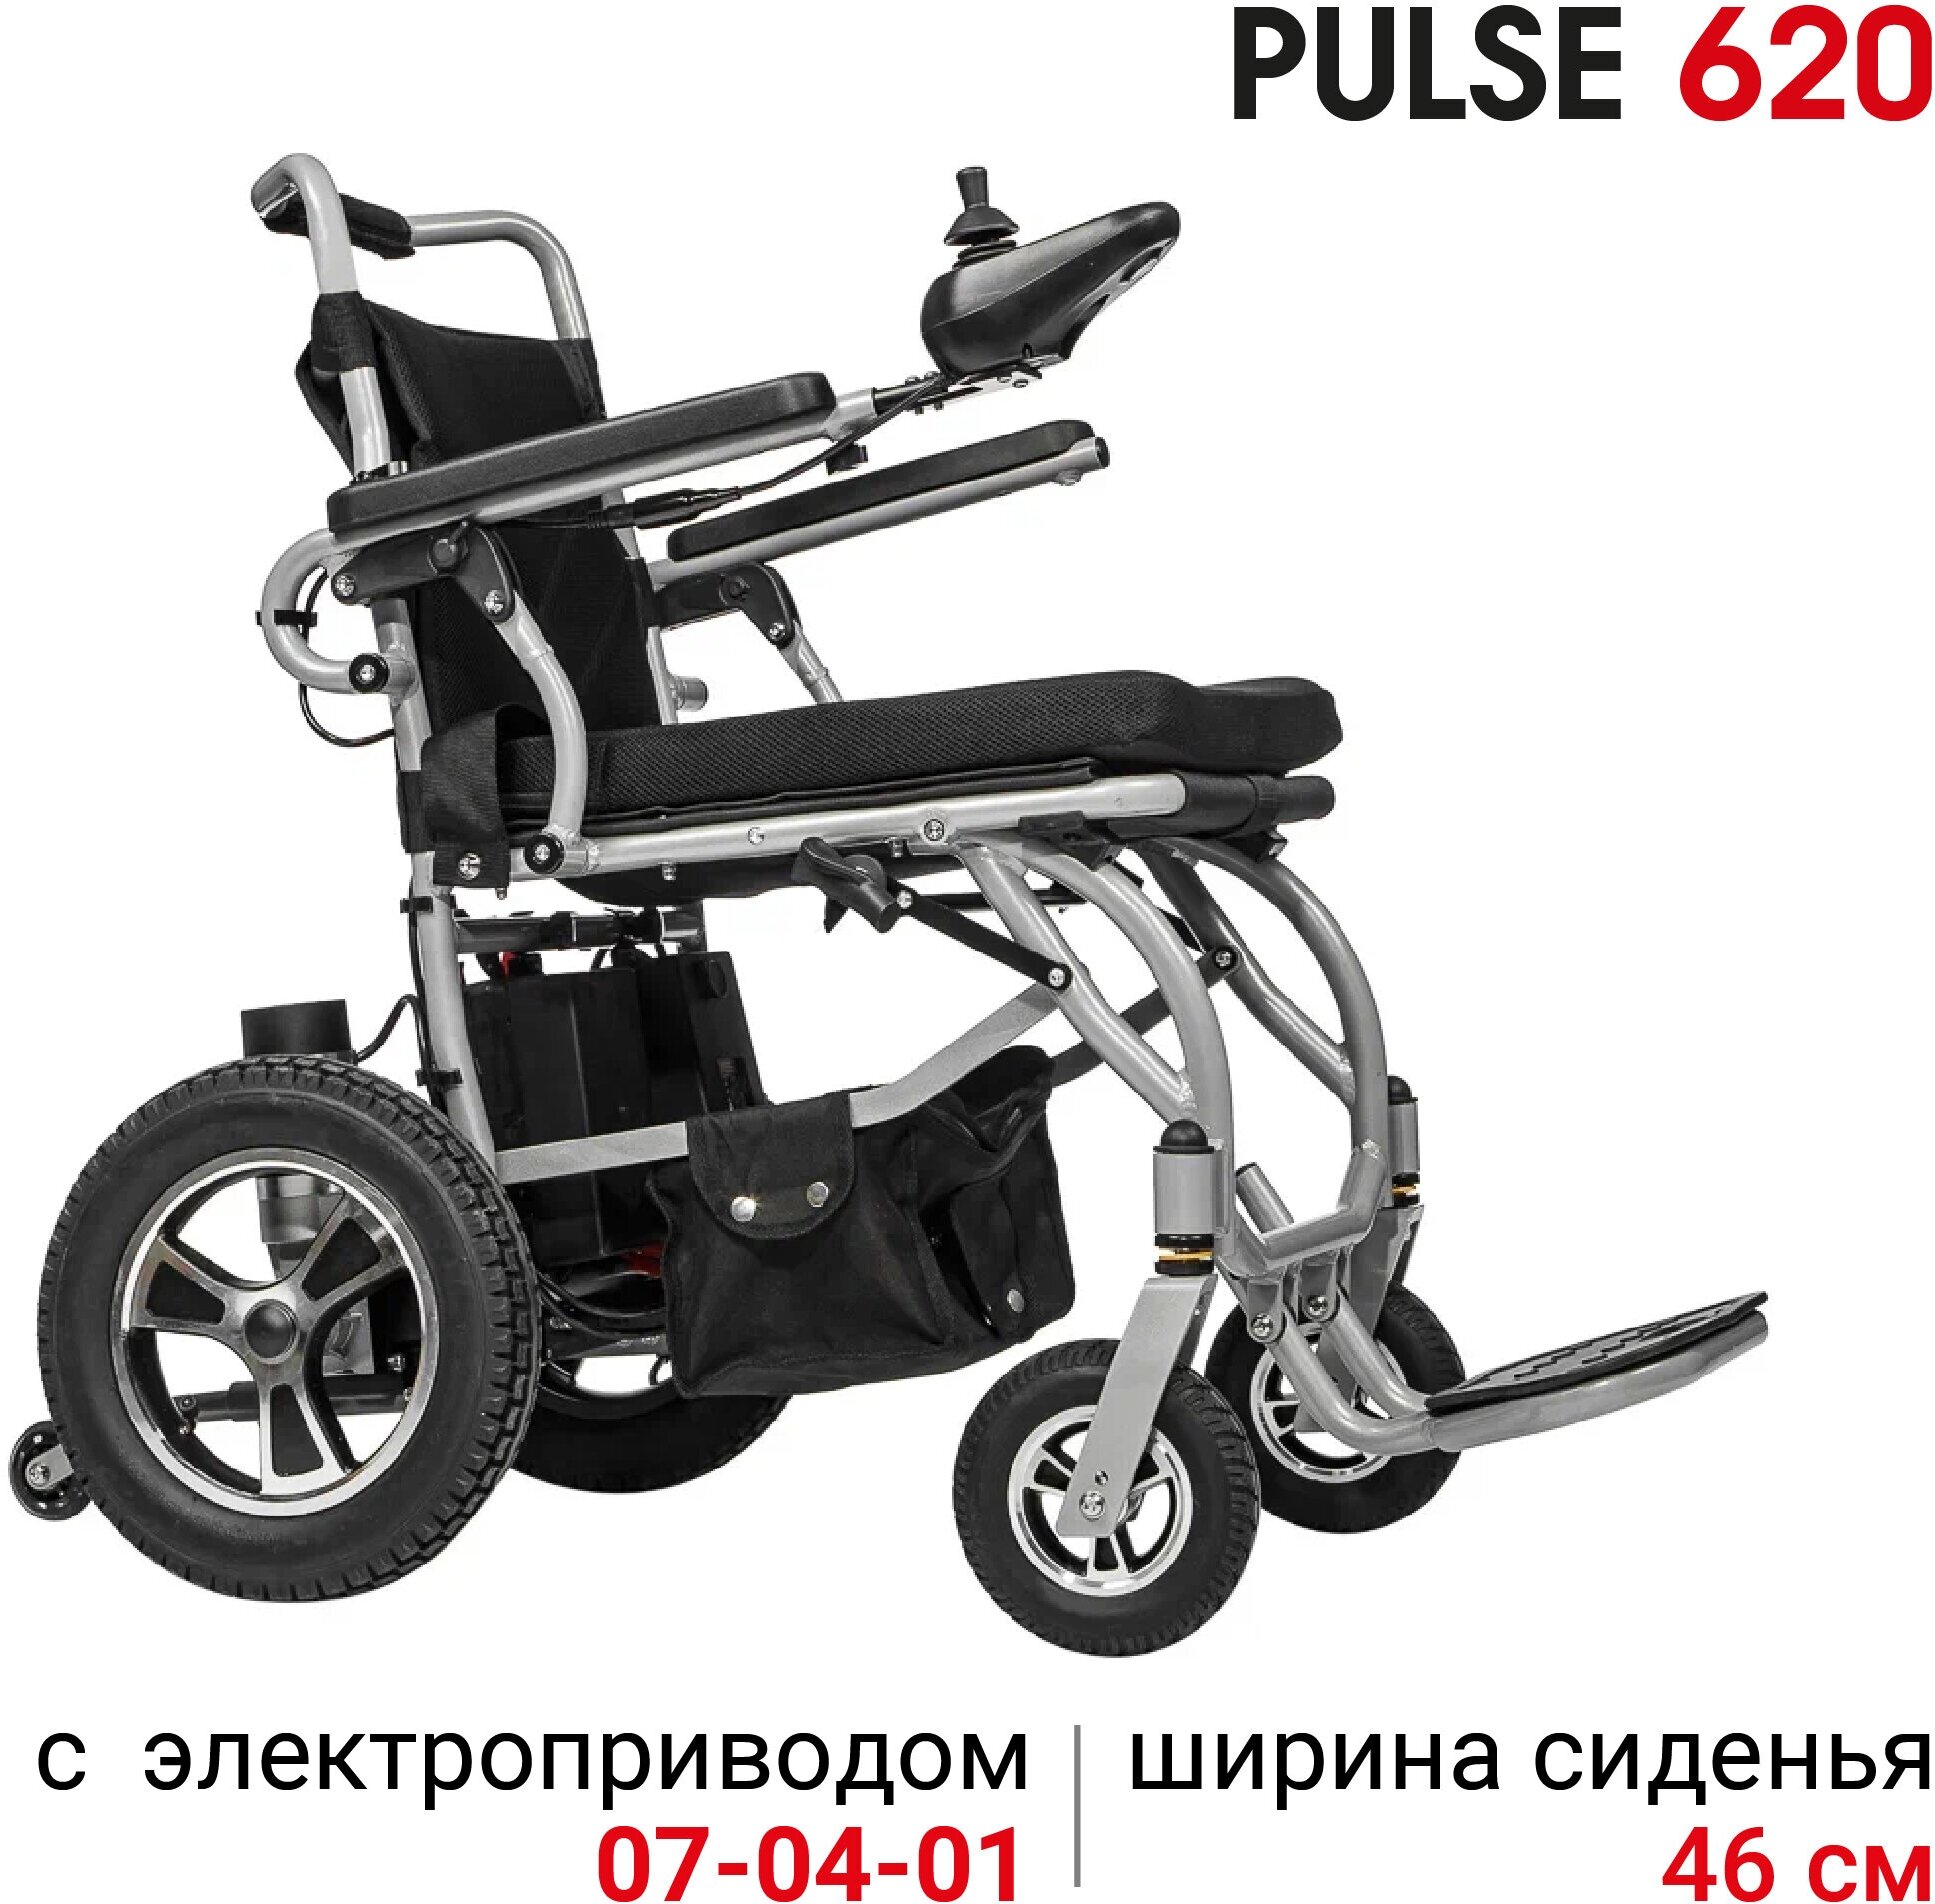 Кресло-коляска с электроприводом складная узкая Ortonica Pulse 620 ширина сиденья 46 см 4 пневматические колеса Код 7-04-01